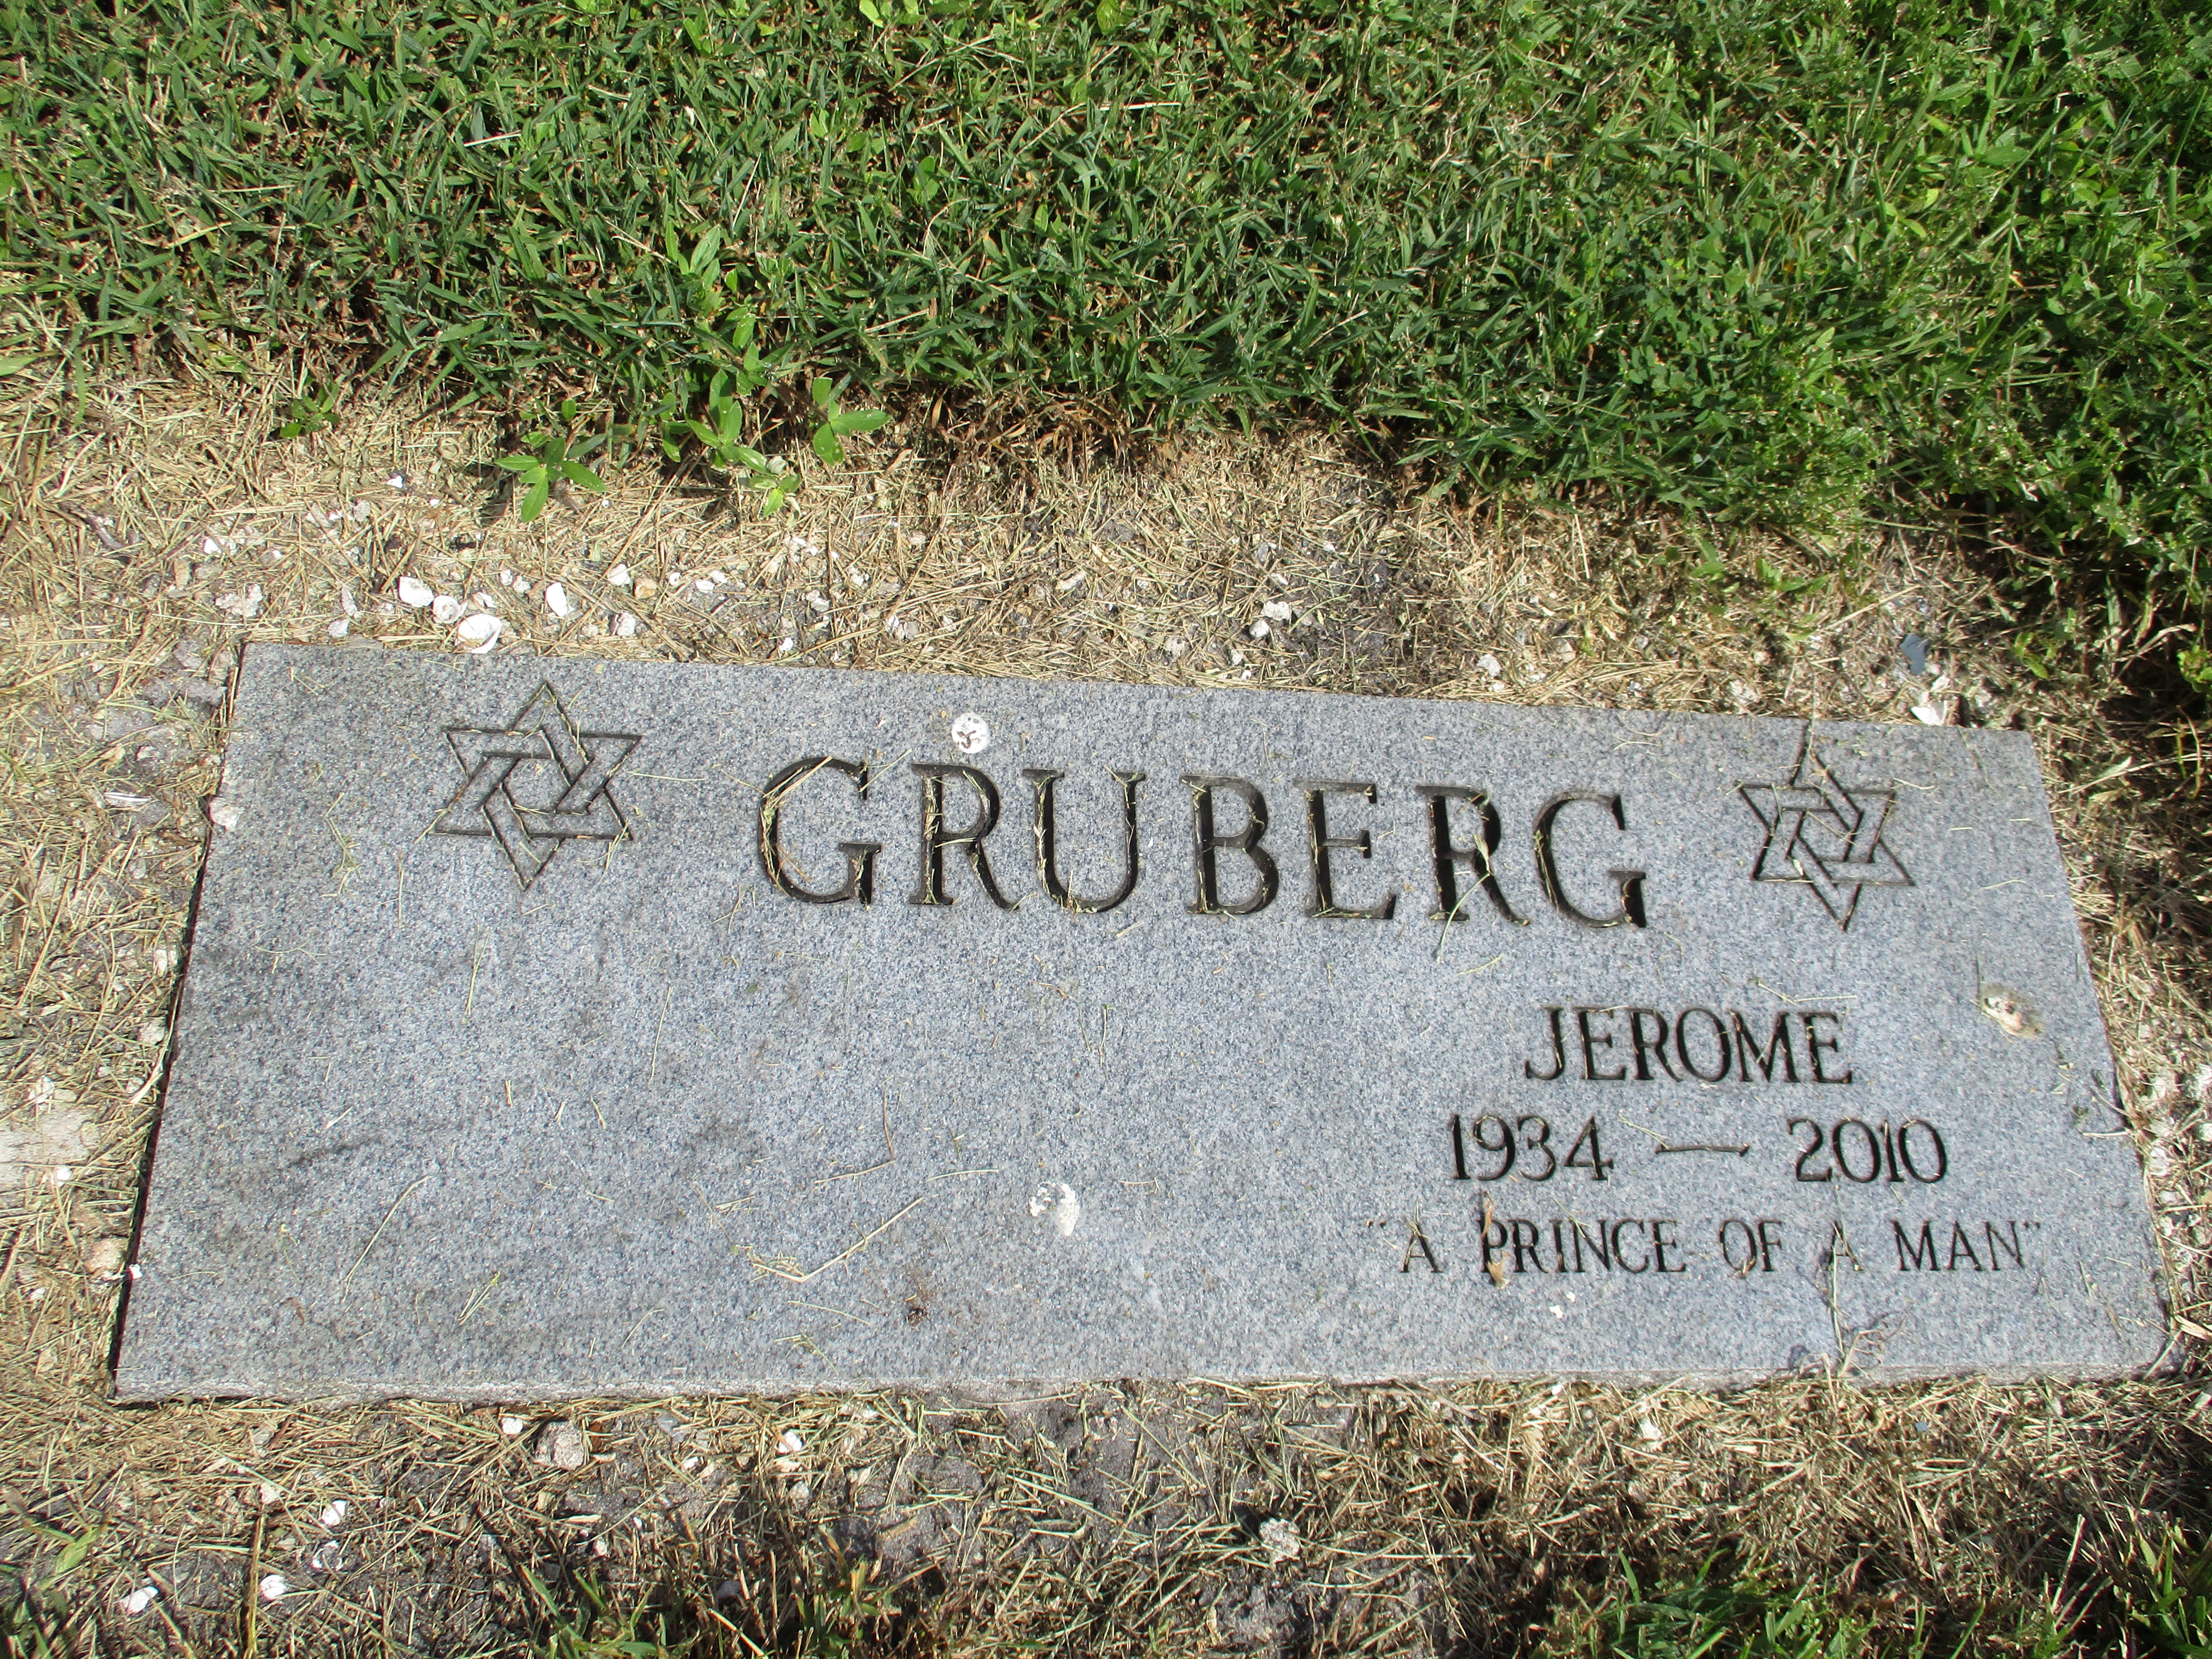 Jerome Gruberg